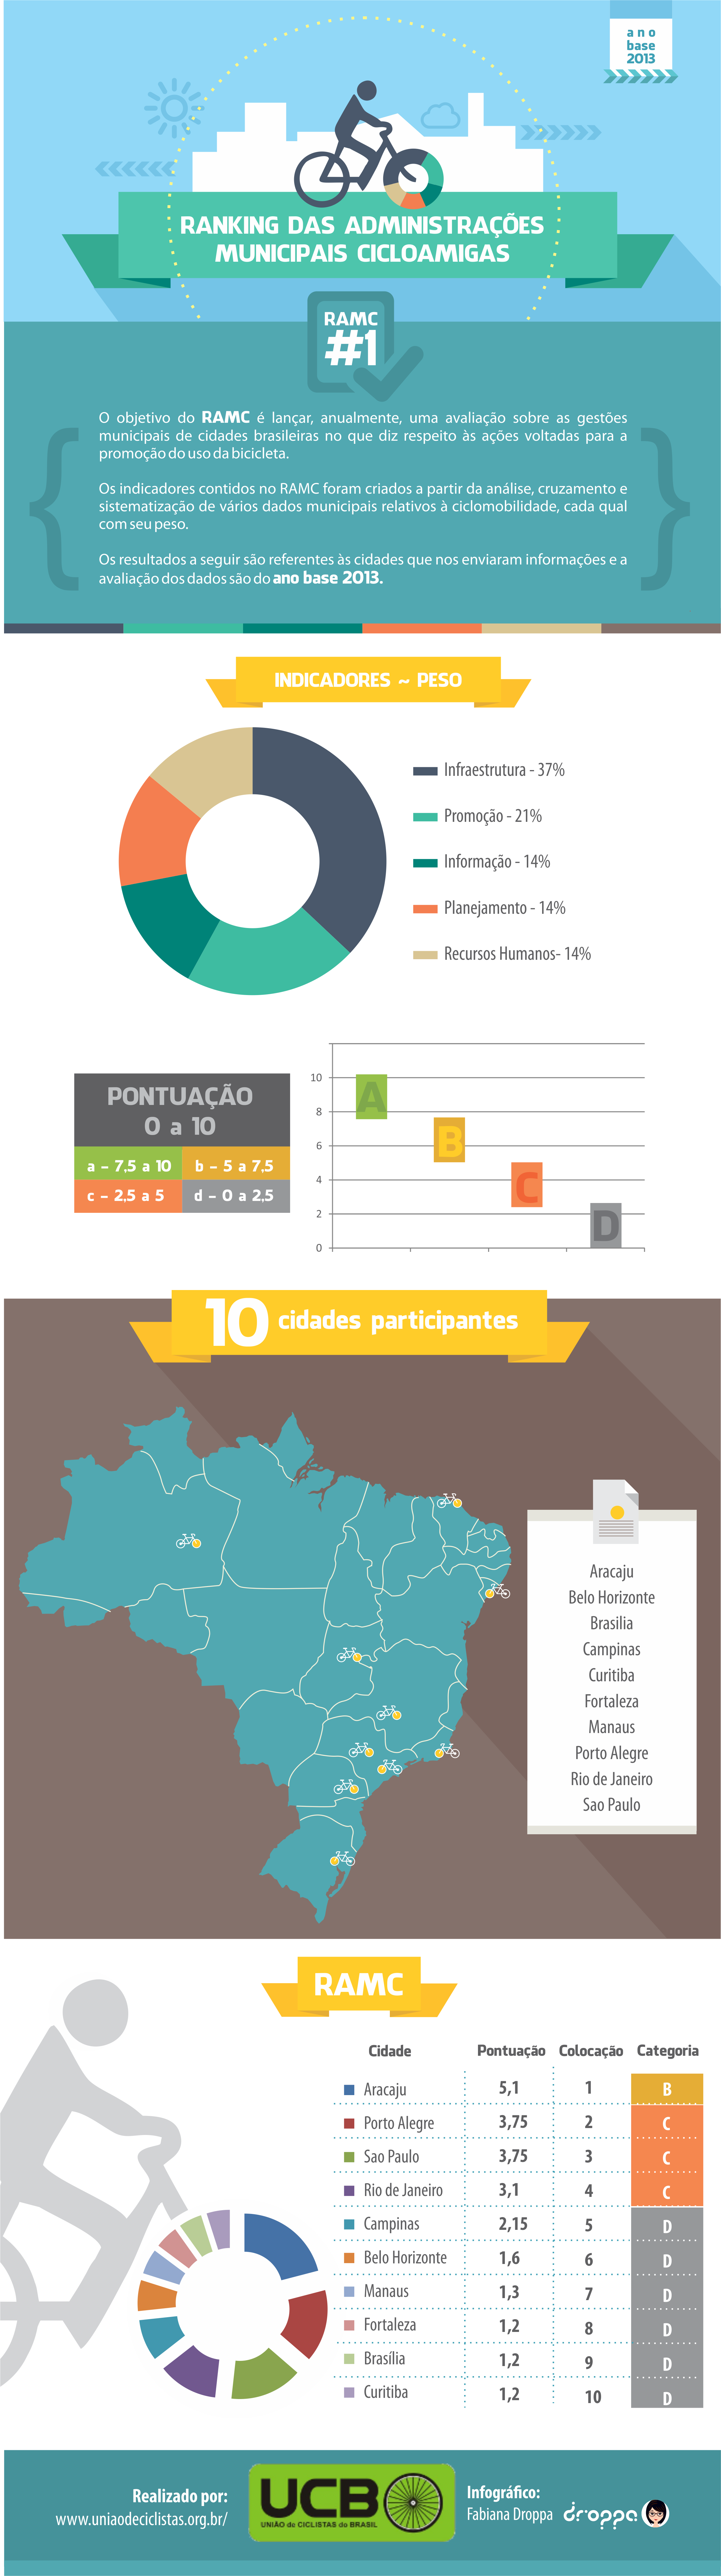 Ranking das Administrações Municipais Cicloamigas